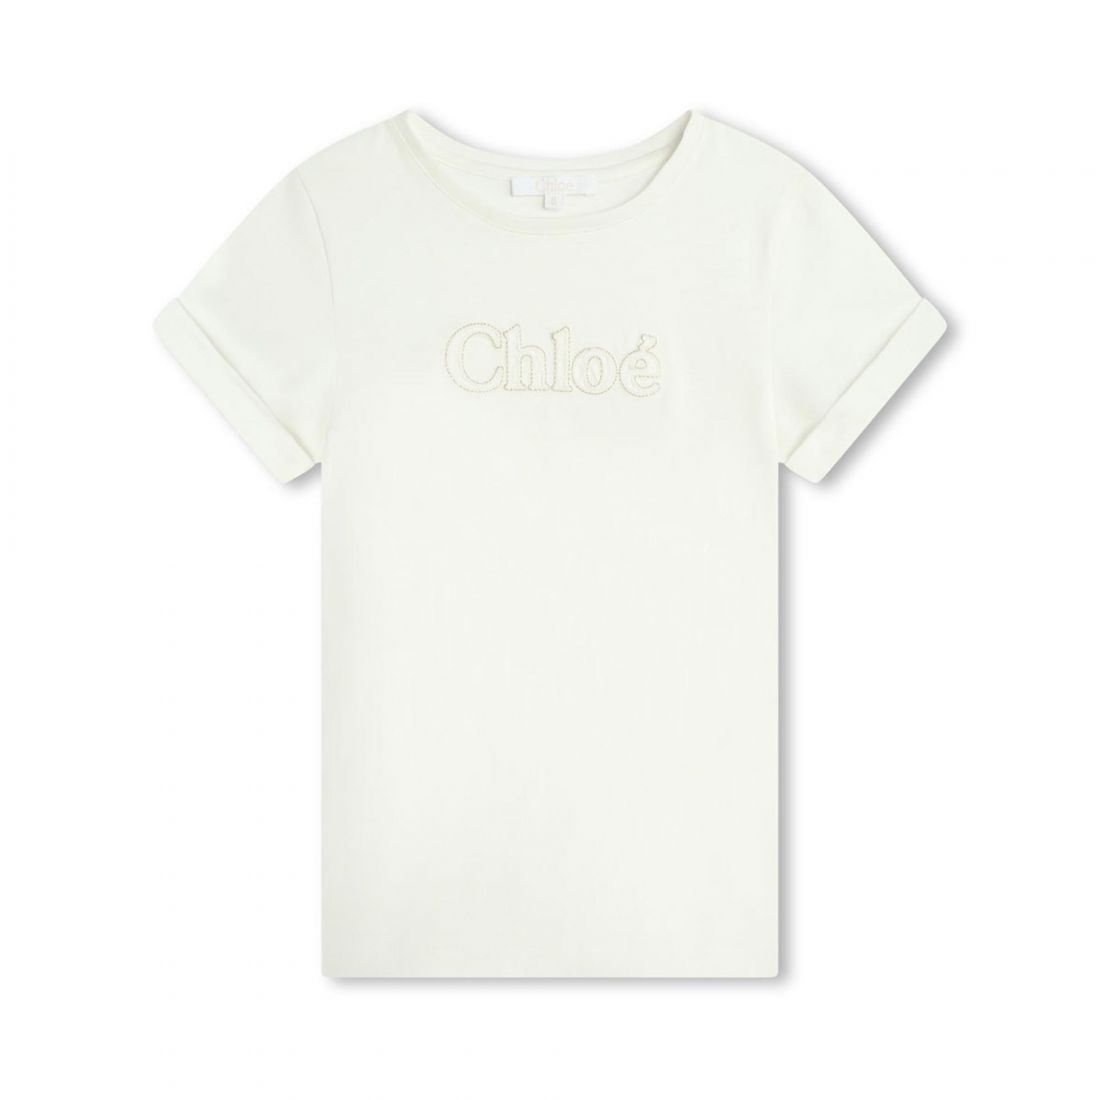 Παιδική μπλούζα Chloé